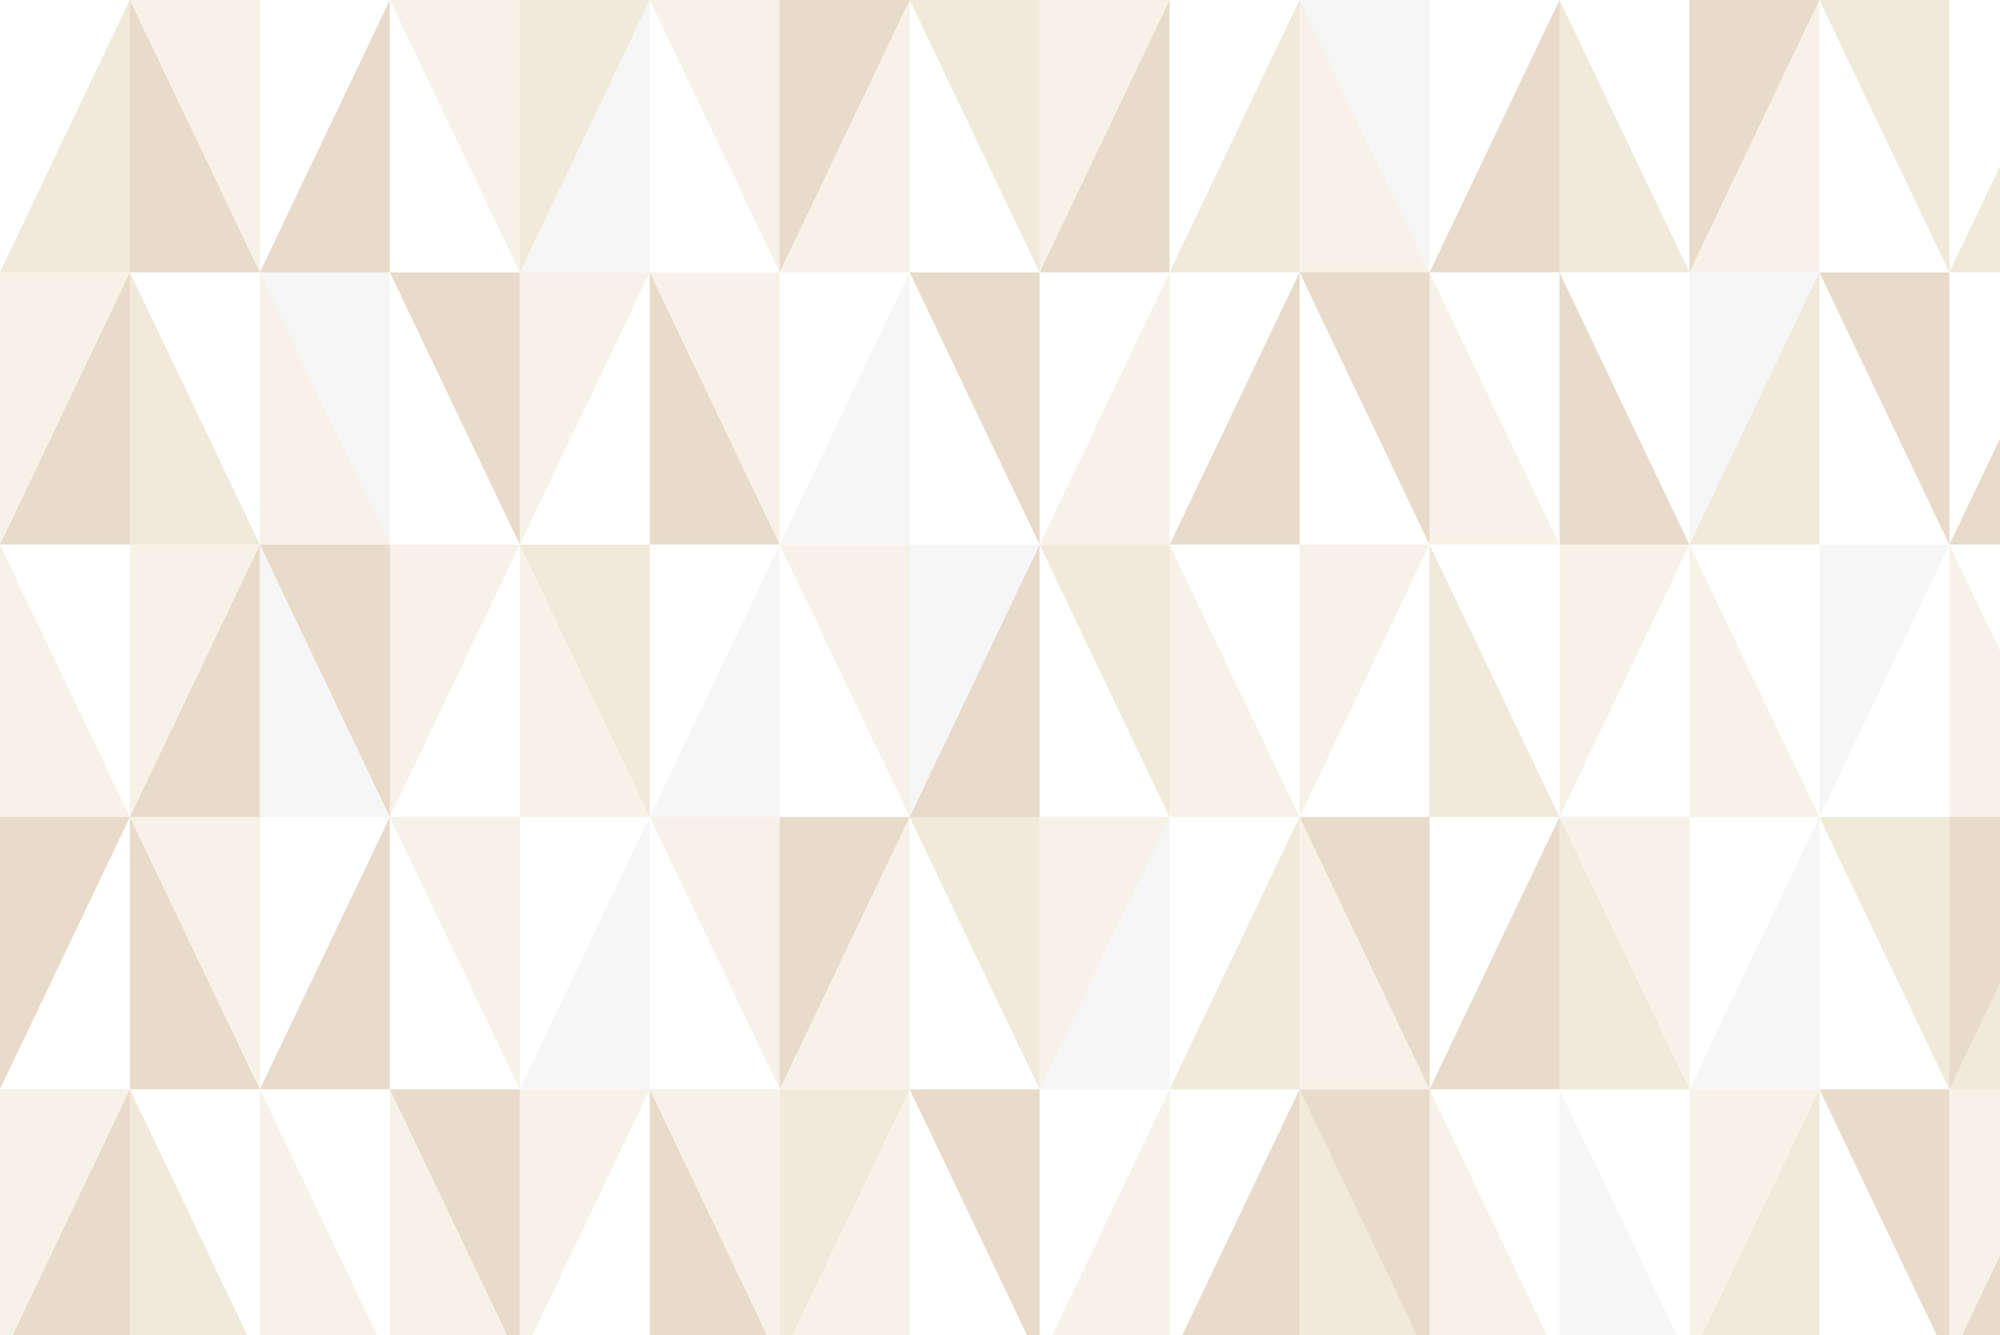             Papier peint design avec petits triangles beige sur intissé lisse premium
        